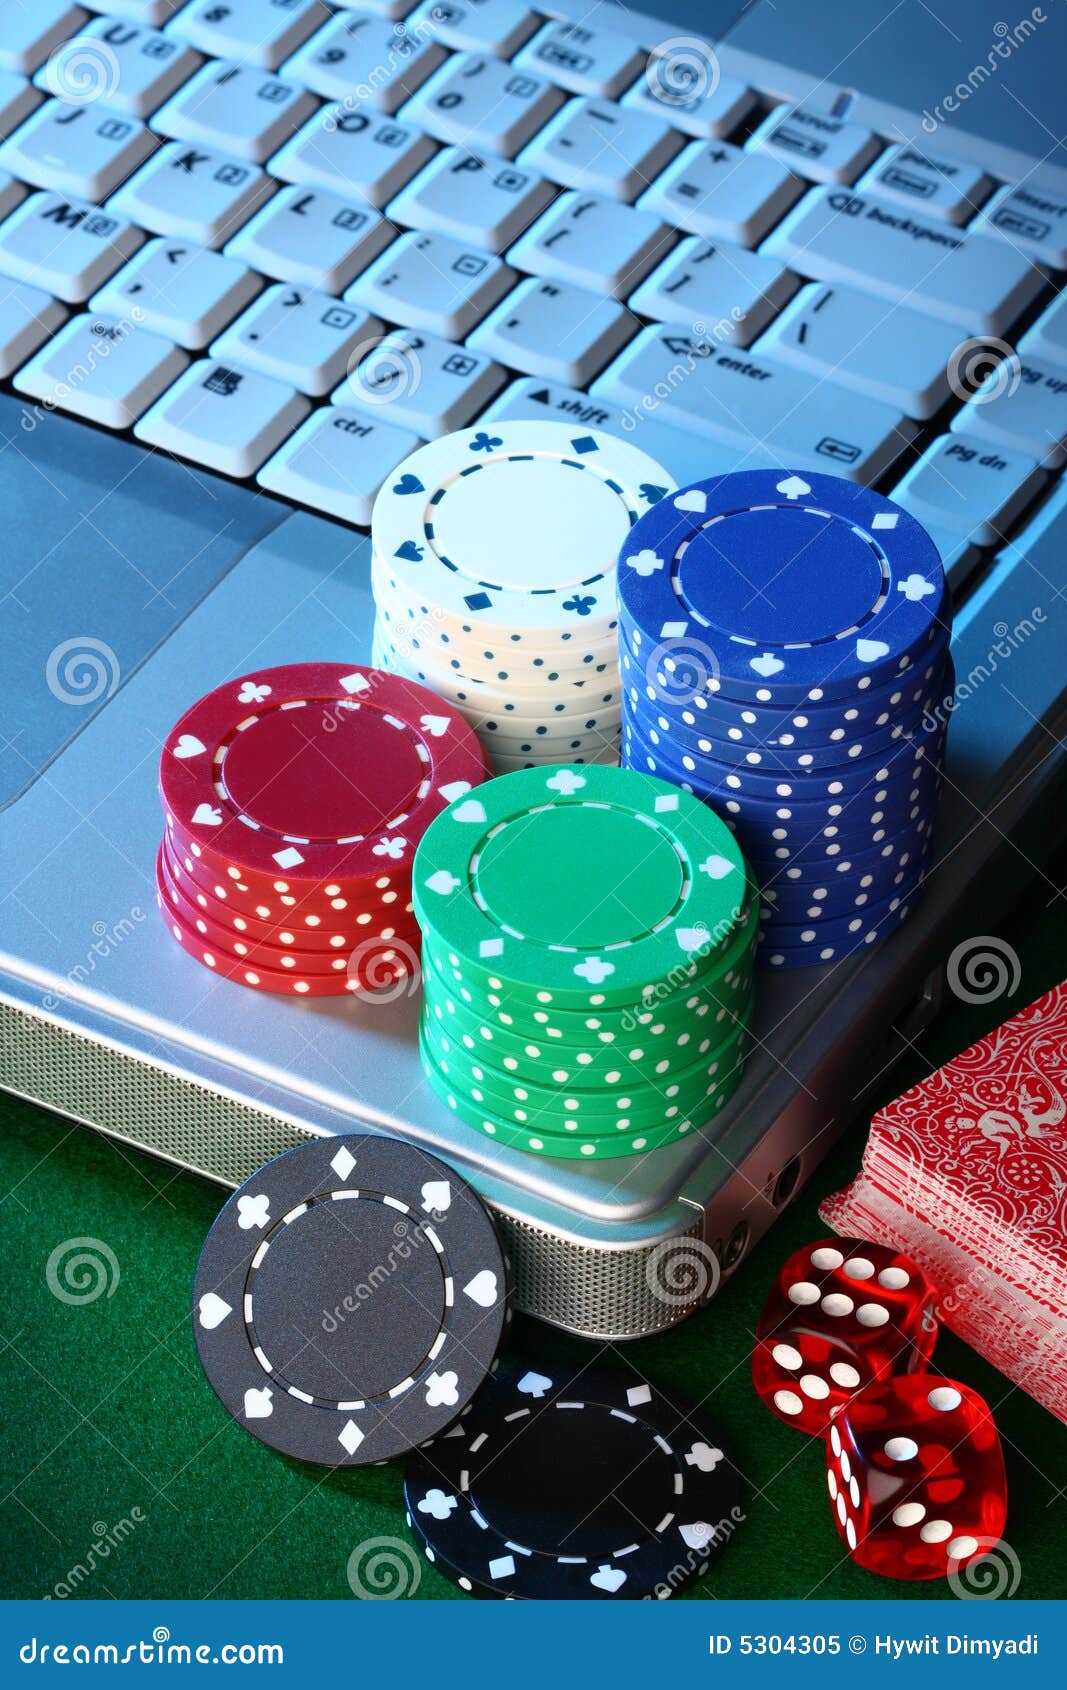 online-gambling-5304305.jpg